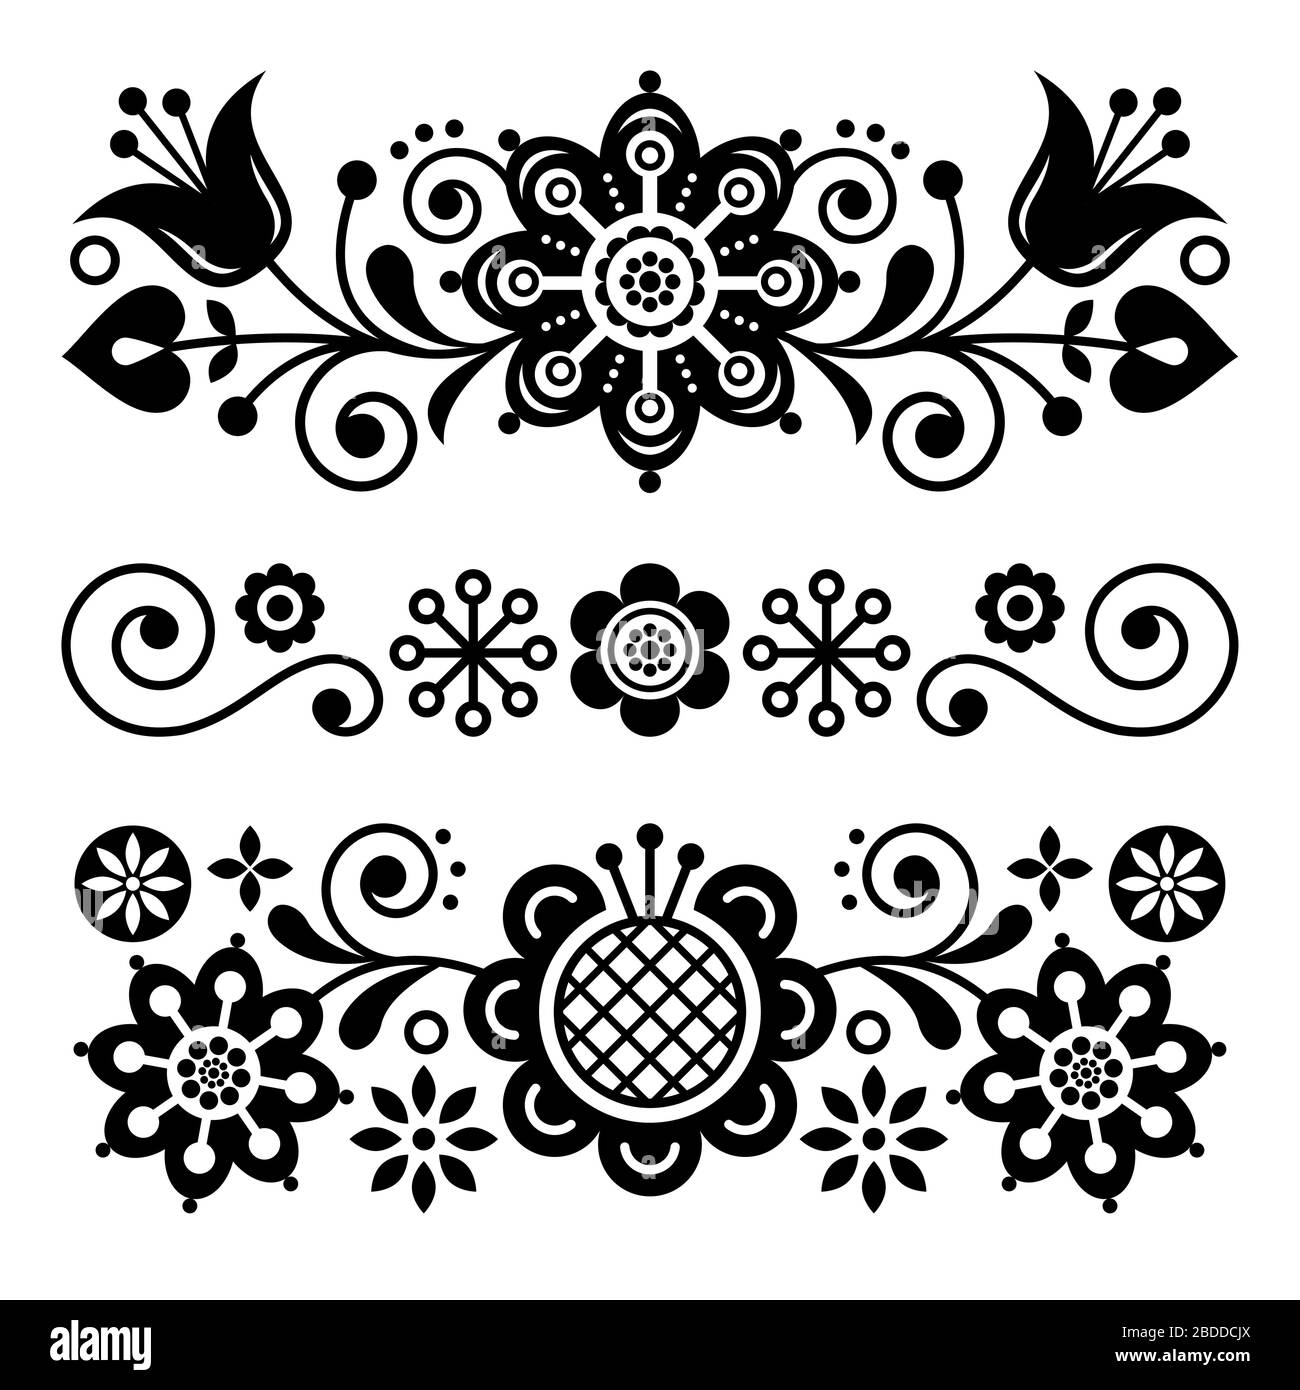 Biglietto d'auguri per l'arte folcloristica floreale, elementi di design, decorazioni in stile scandinavo con fiori e foglie, composizioni floreali retrò in bianco e nero Illustrazione Vettoriale